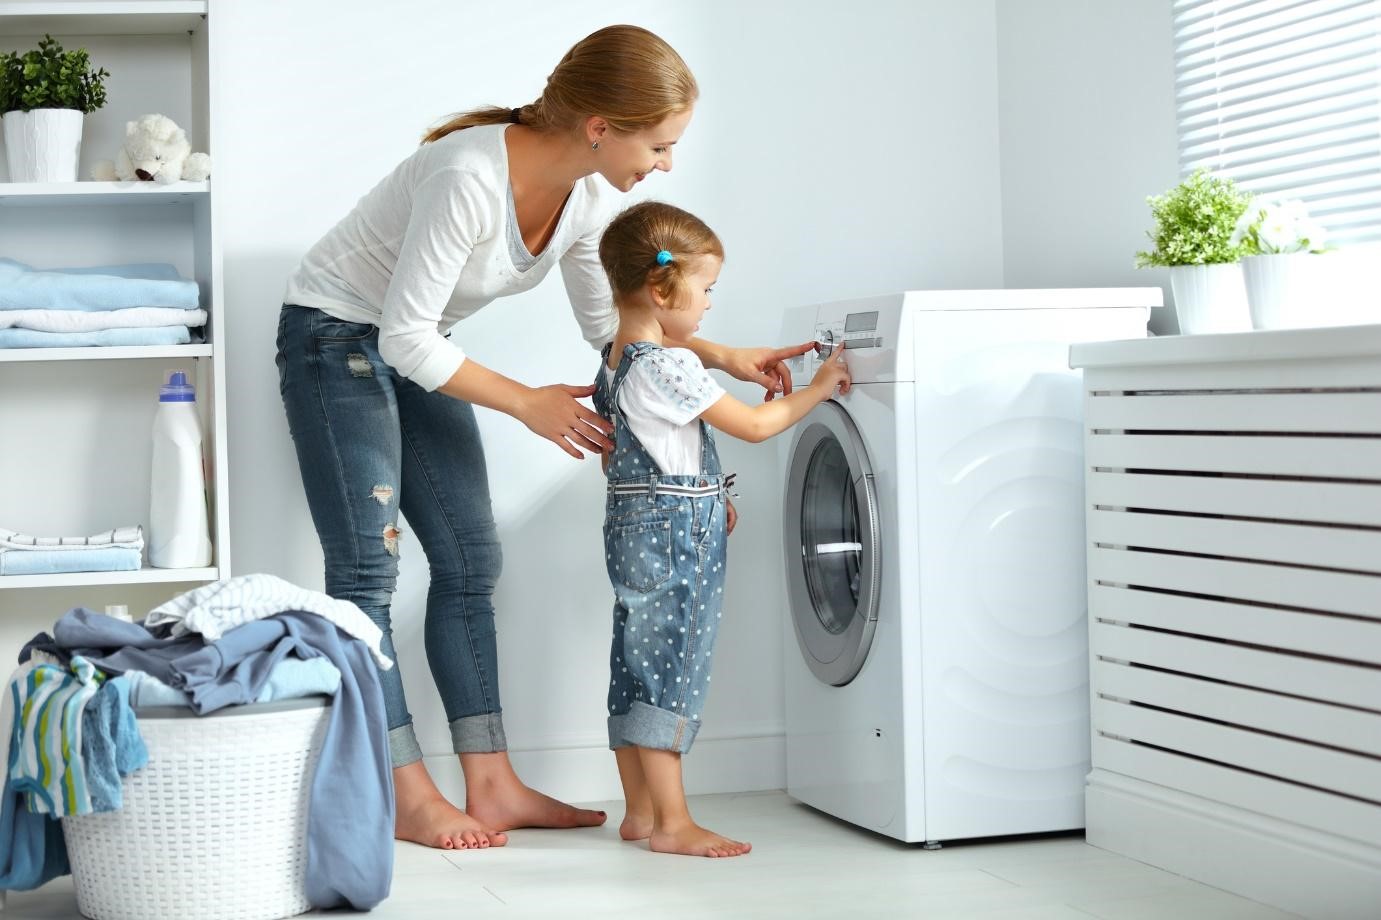 Mua máy giặt đúng kích thước và nhu cầu sử dụng của gia đình